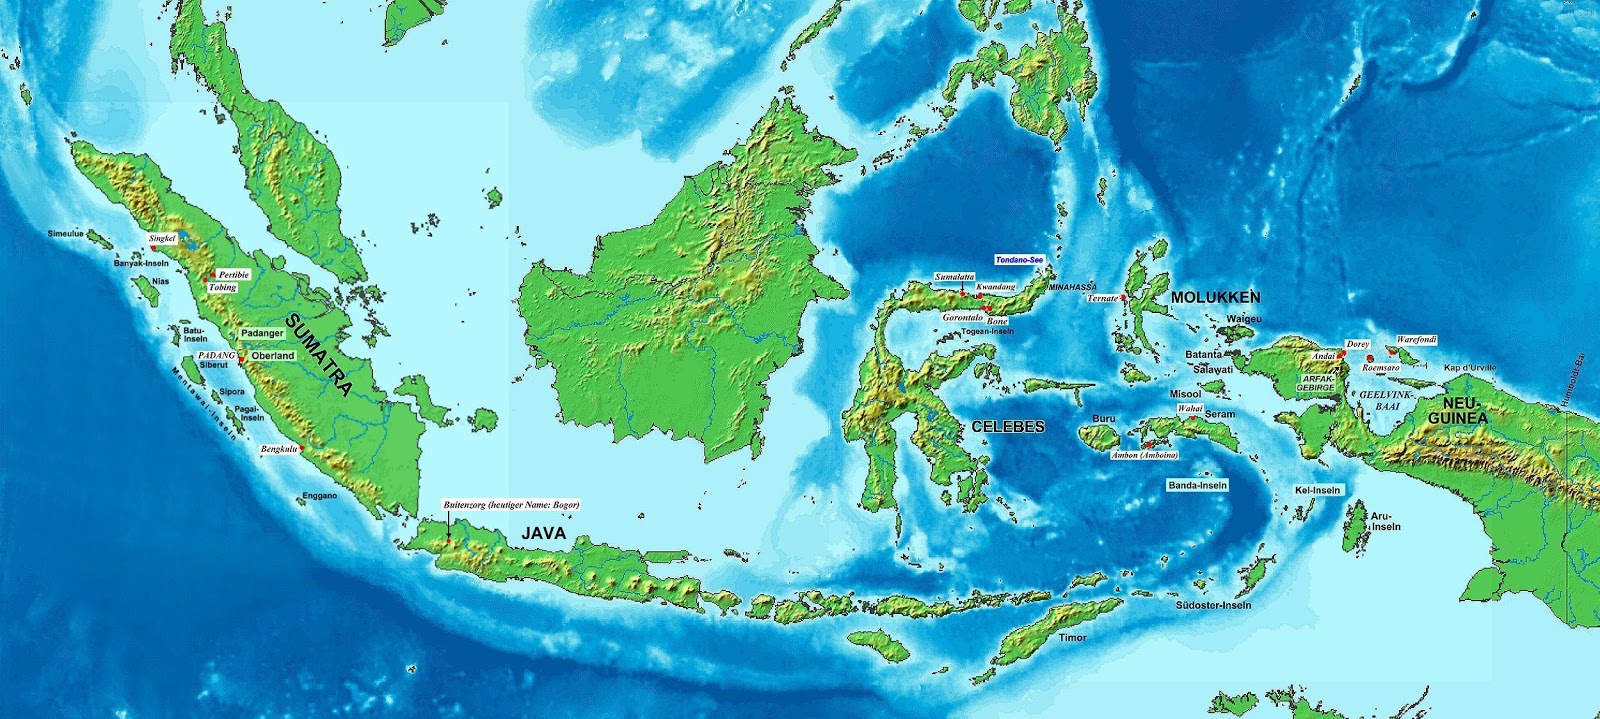 Kumpulan Animasi Peta Indonesia Kantor Meme